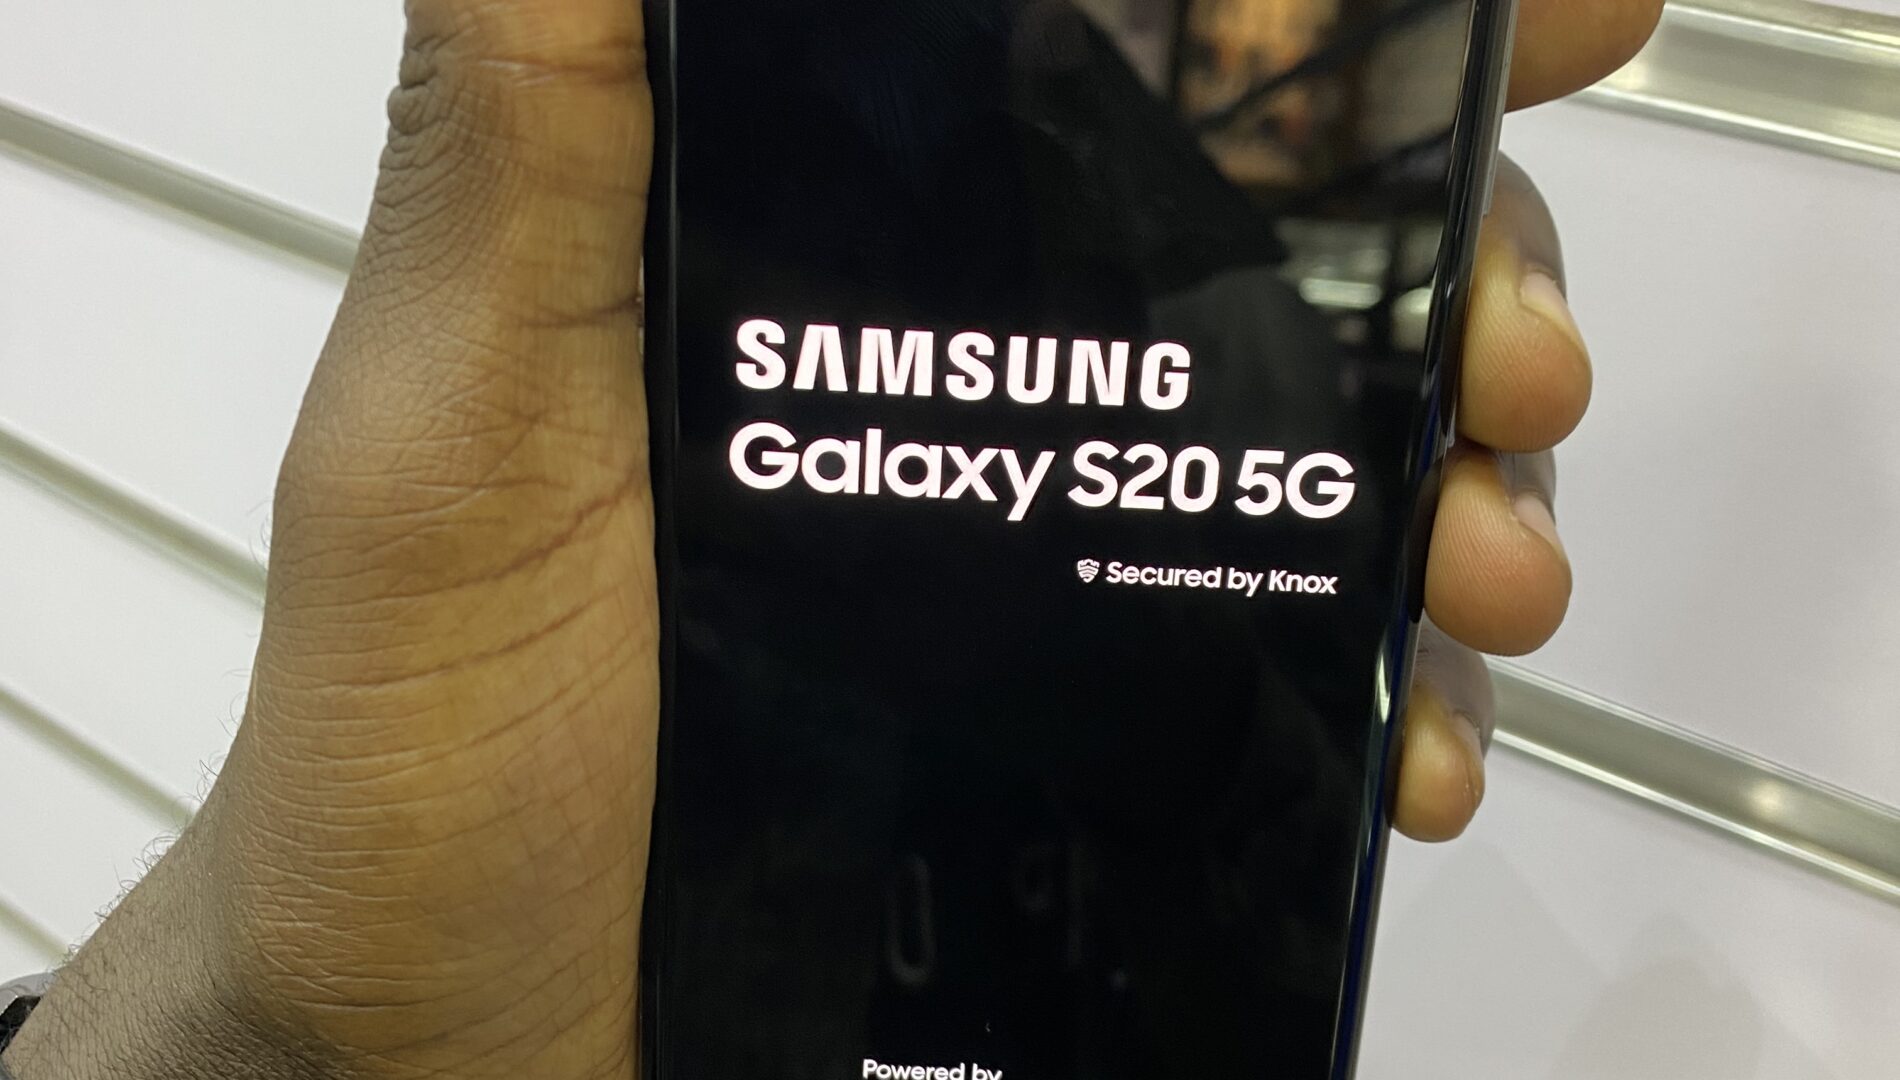 Samsung Galaxy S20 5G